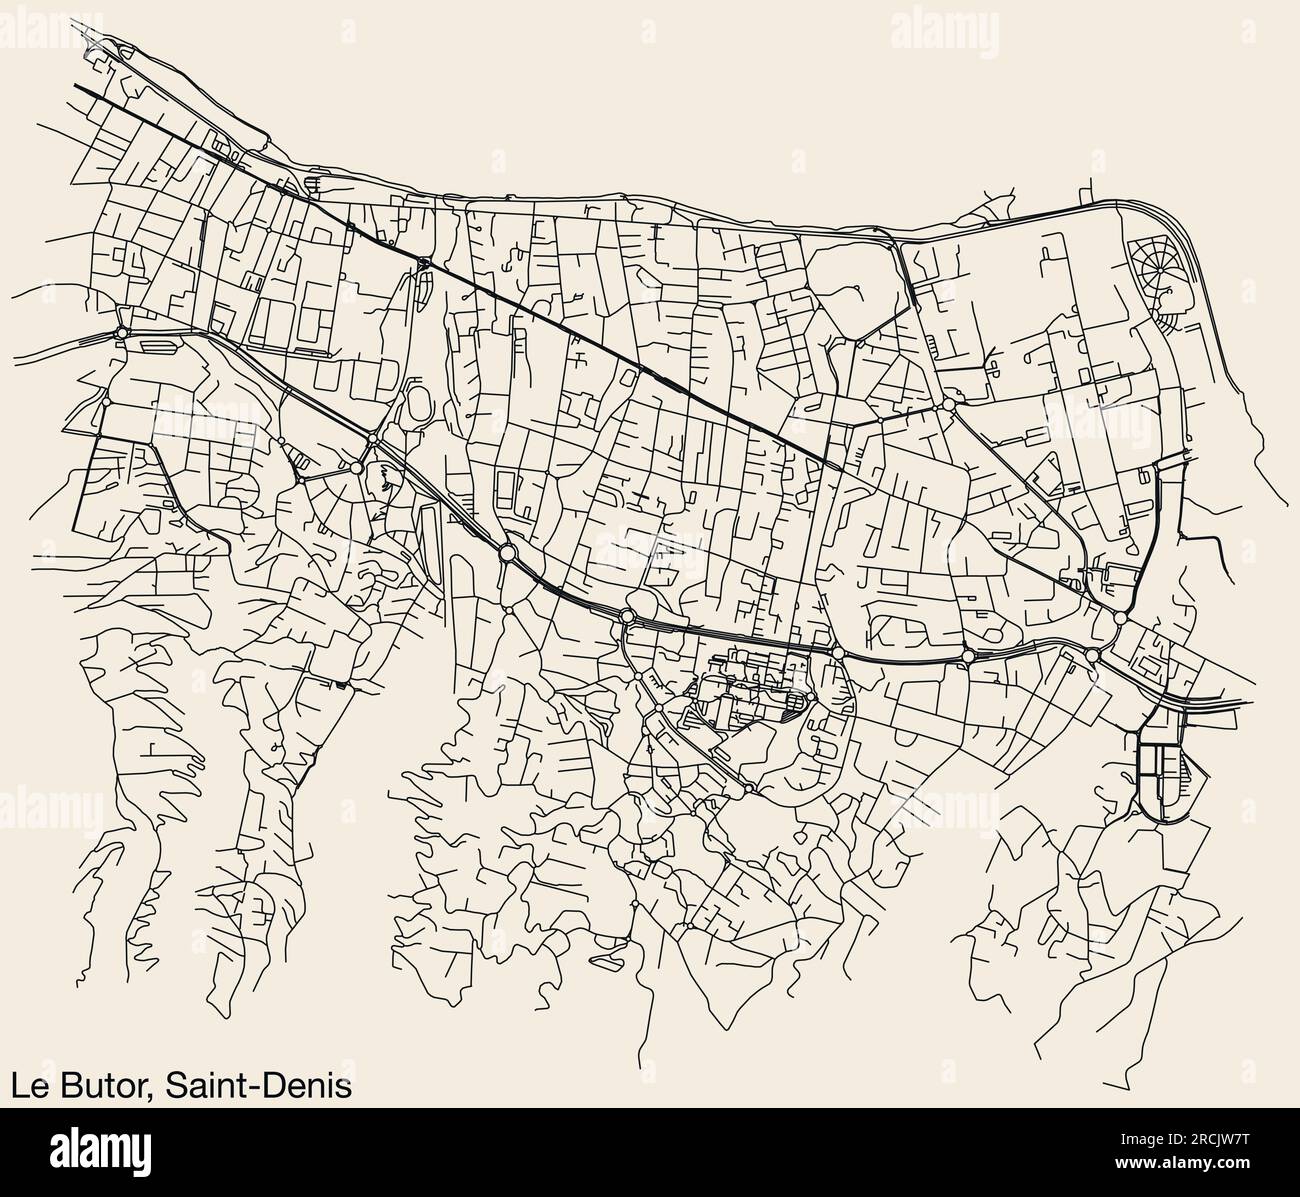 Cartina stradale del QUARTIERE LE BUTOR, SAINT-DENIS (LA RÉUNION) Illustrazione Vettoriale